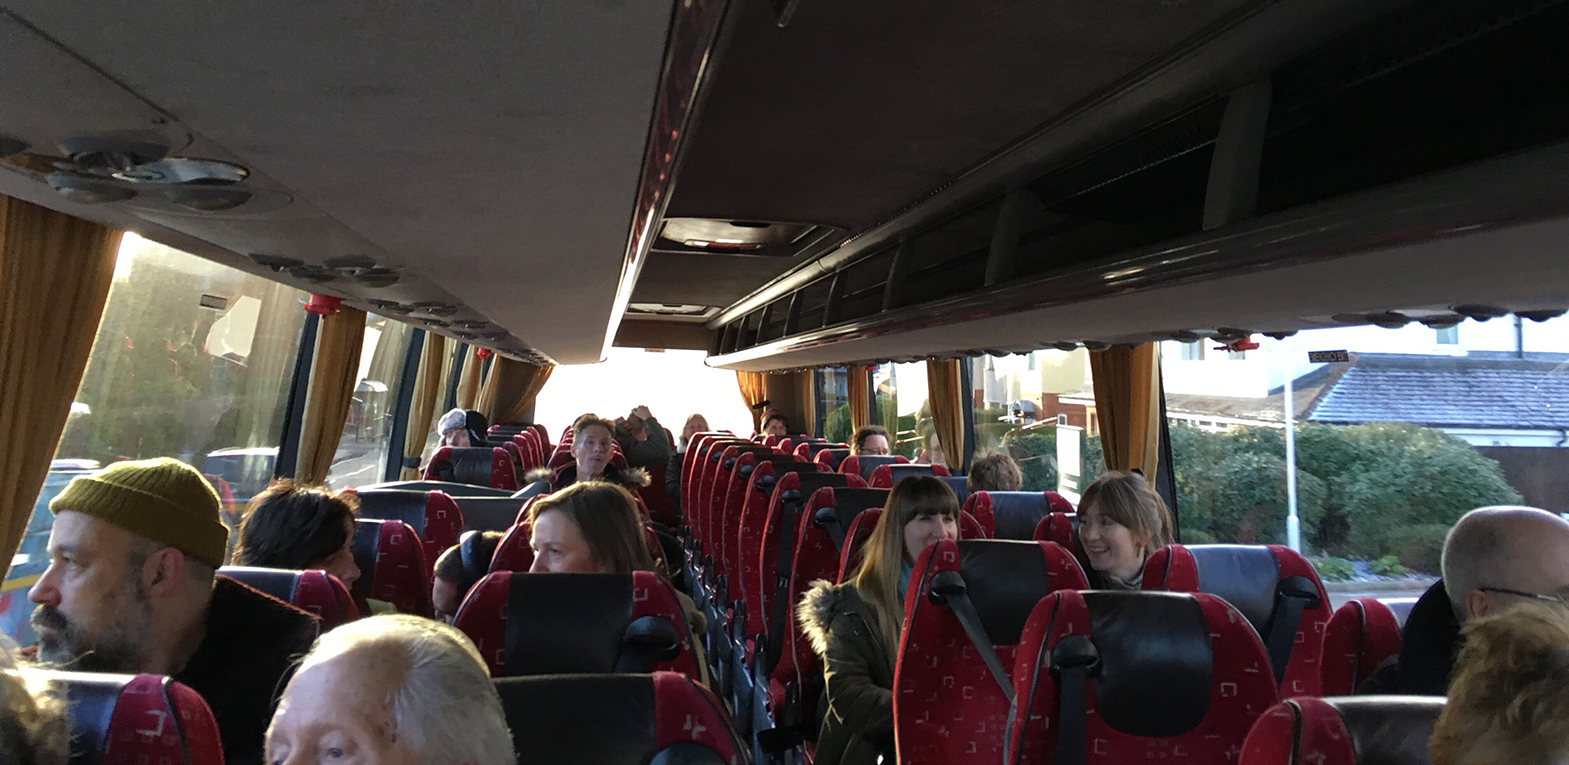 Participants on the Precarious Landscape bus tour